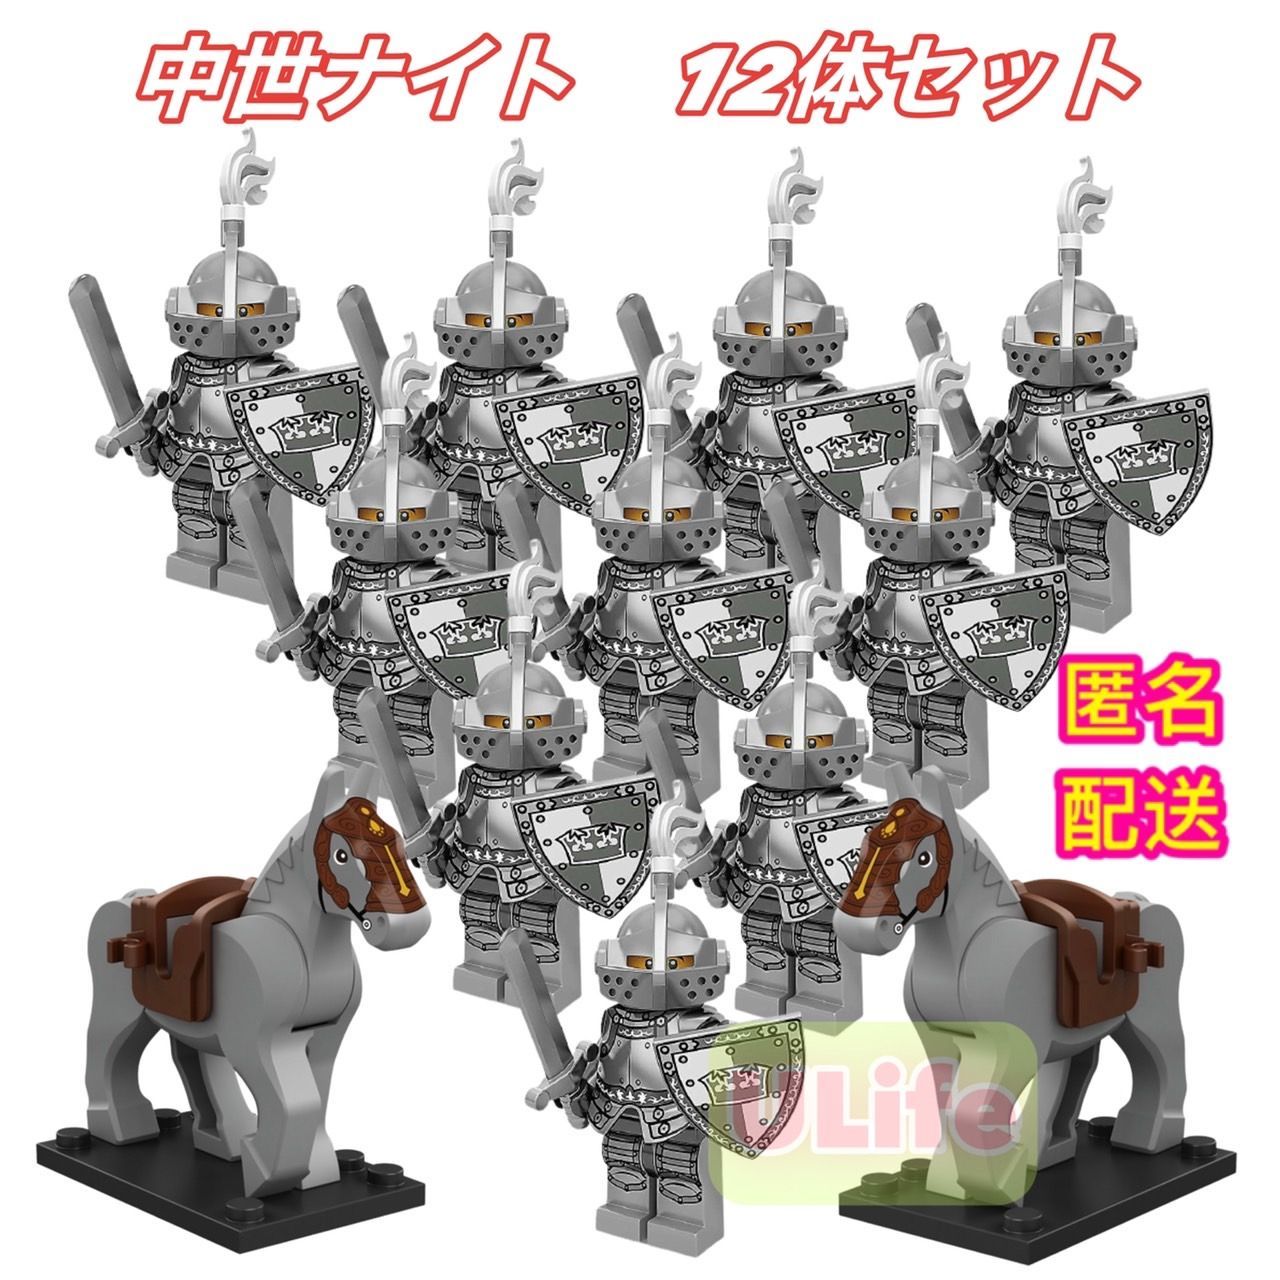 12体セット1 中世騎士団騎馬LEGOレゴ互換ミニフィグブロックヨーロッパ